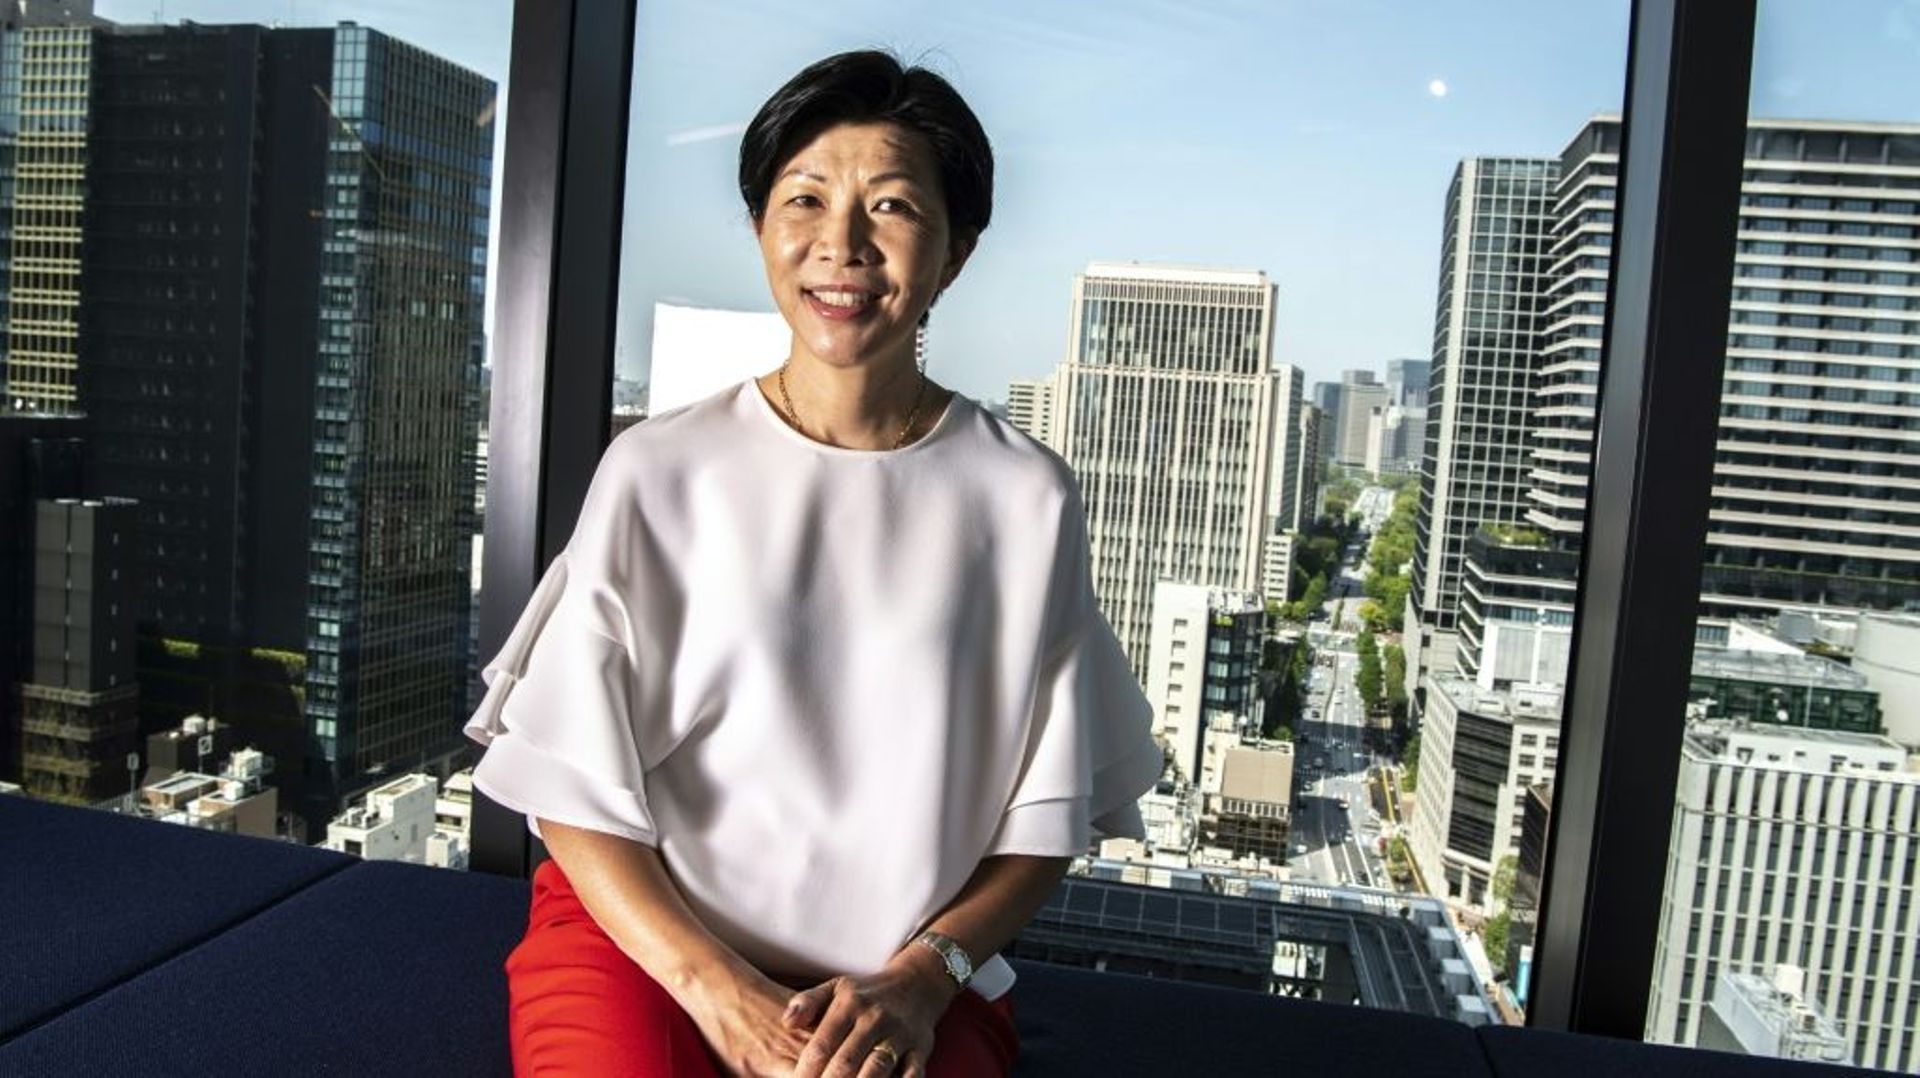 Kathy Matsui, pionnière des "womenomics" au Japon et codirigeante de MPower Partners, un fonds de capital-investissement aux critères ESG, le 25 avril 2022 à Tokyo